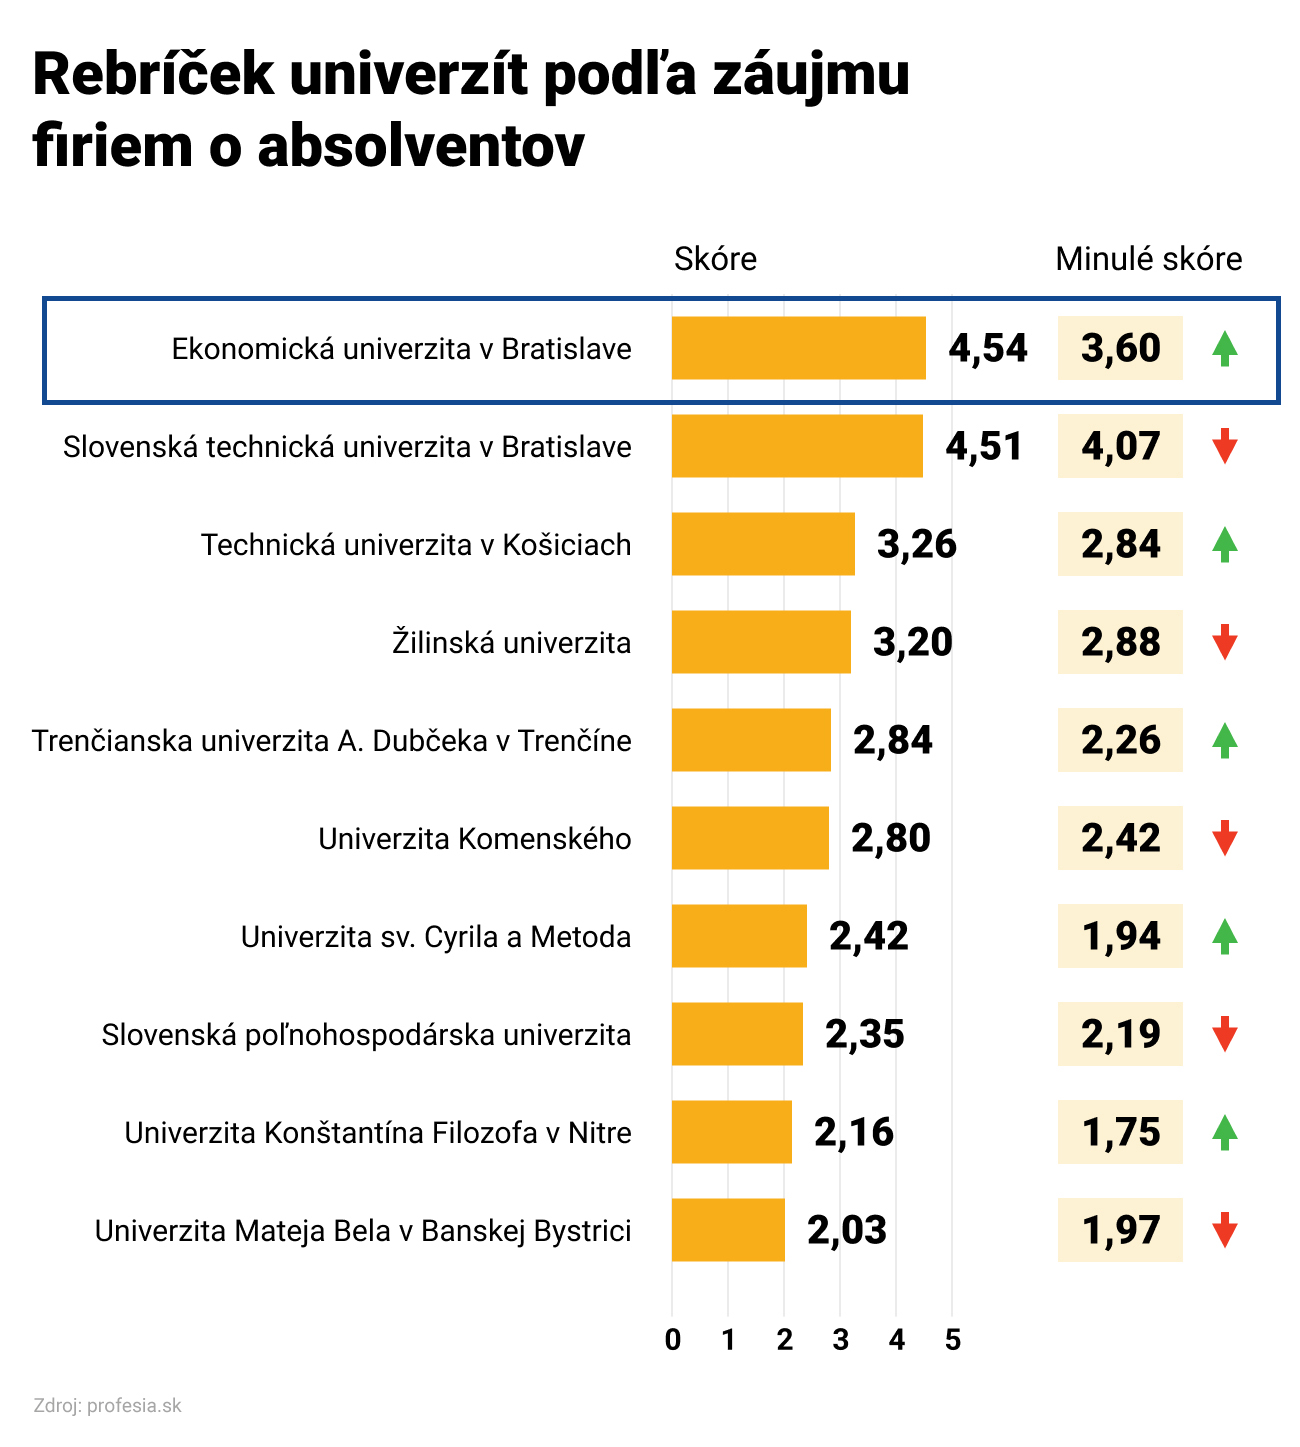 Absolventi Ekonomickej univerzity v Bratislave sú opäť najžiadanejší - rebríček univerzít